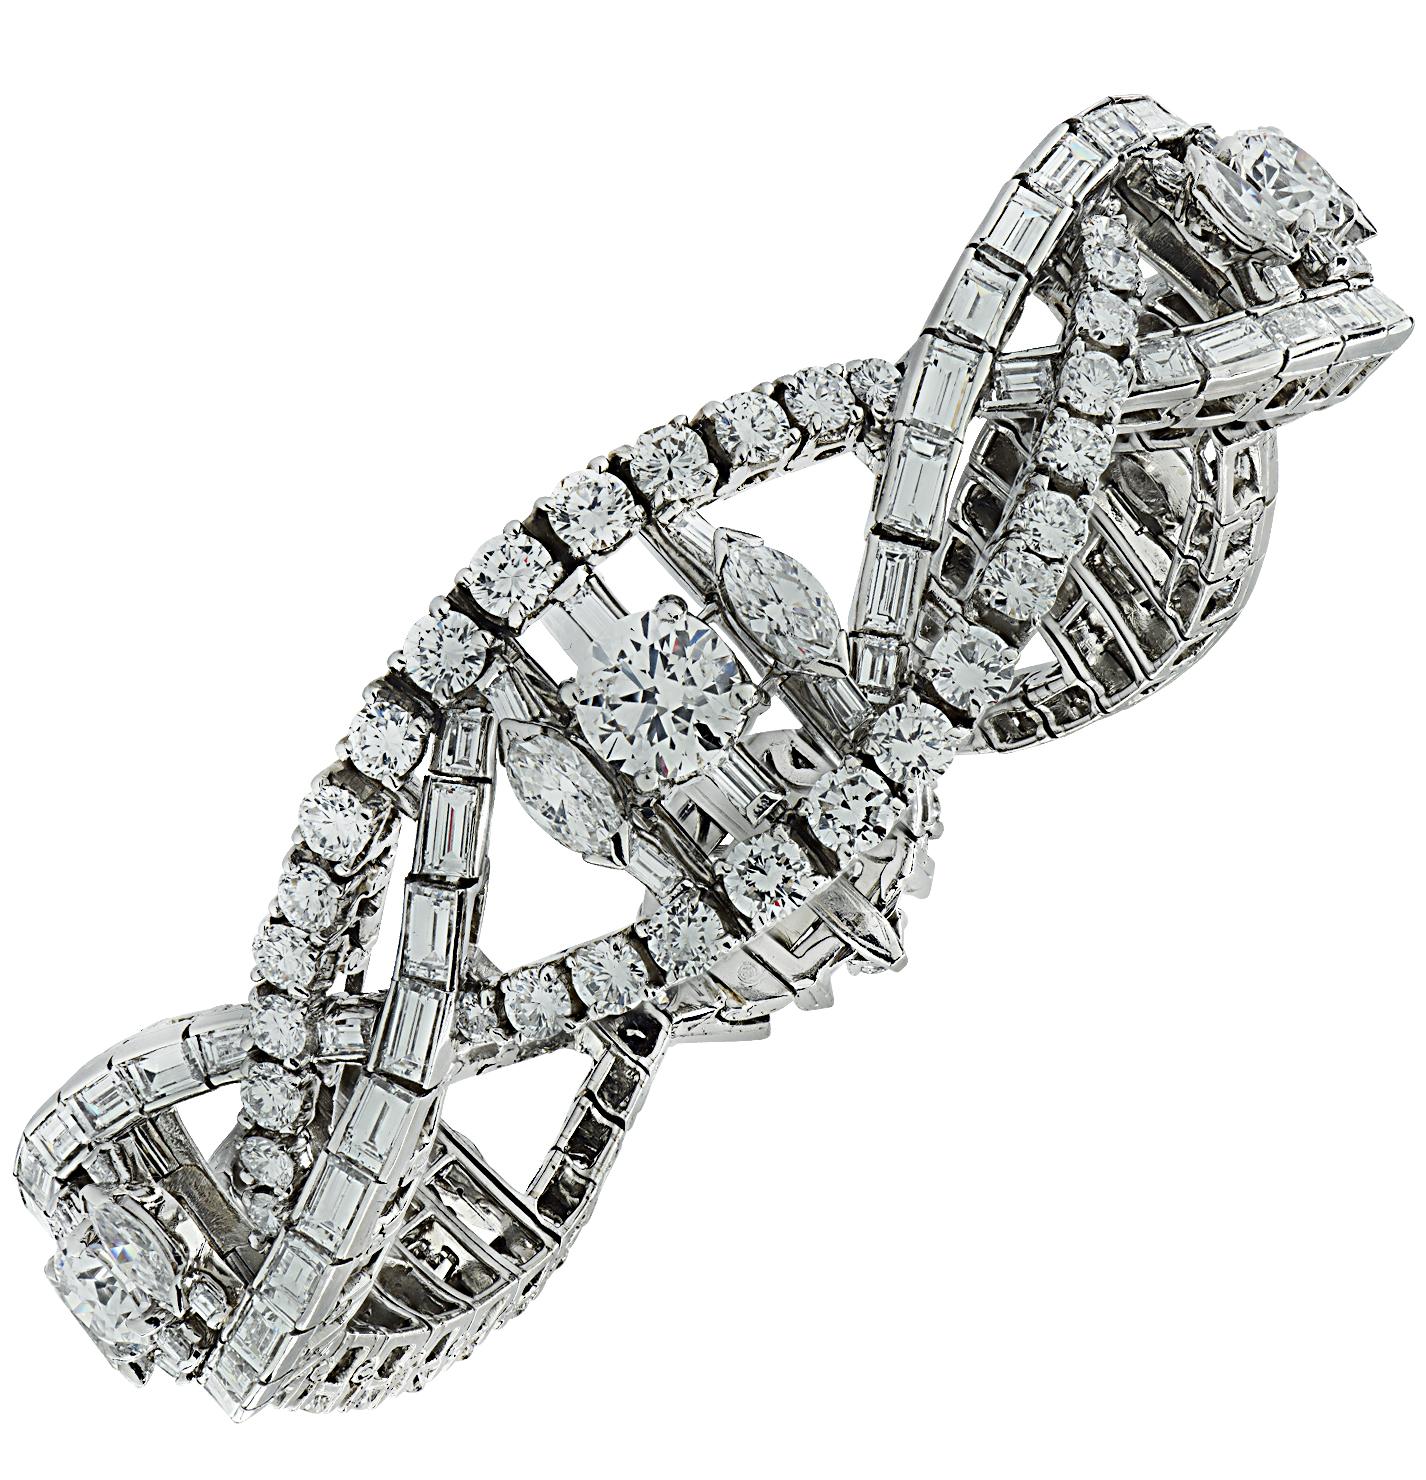 Dieses exquisite Armband aus dem legendären Hause Oscar Heyman wurde 1975 fachmännisch aus feinem Platin gefertigt und präsentiert 18 Karat Diamanten, die in einem atemberaubenden Twist-Design gefasst sind. Dieses spektakuläre Armband besteht aus 74